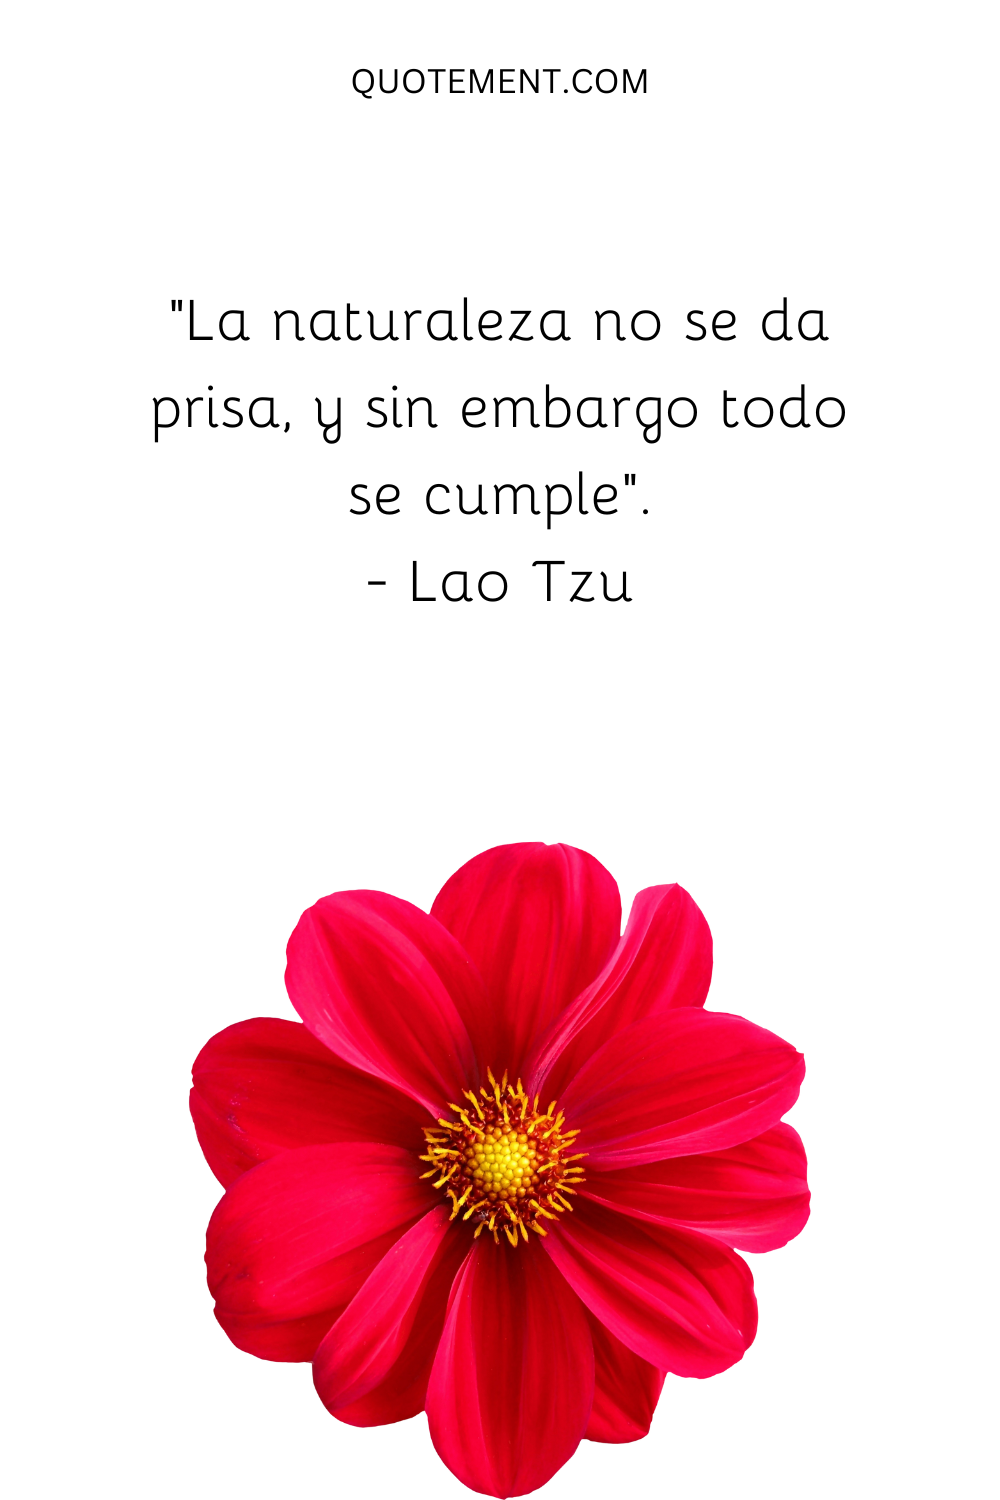 "La naturaleza no se apresura y, sin embargo, todo se cumple". - Lao Tzu